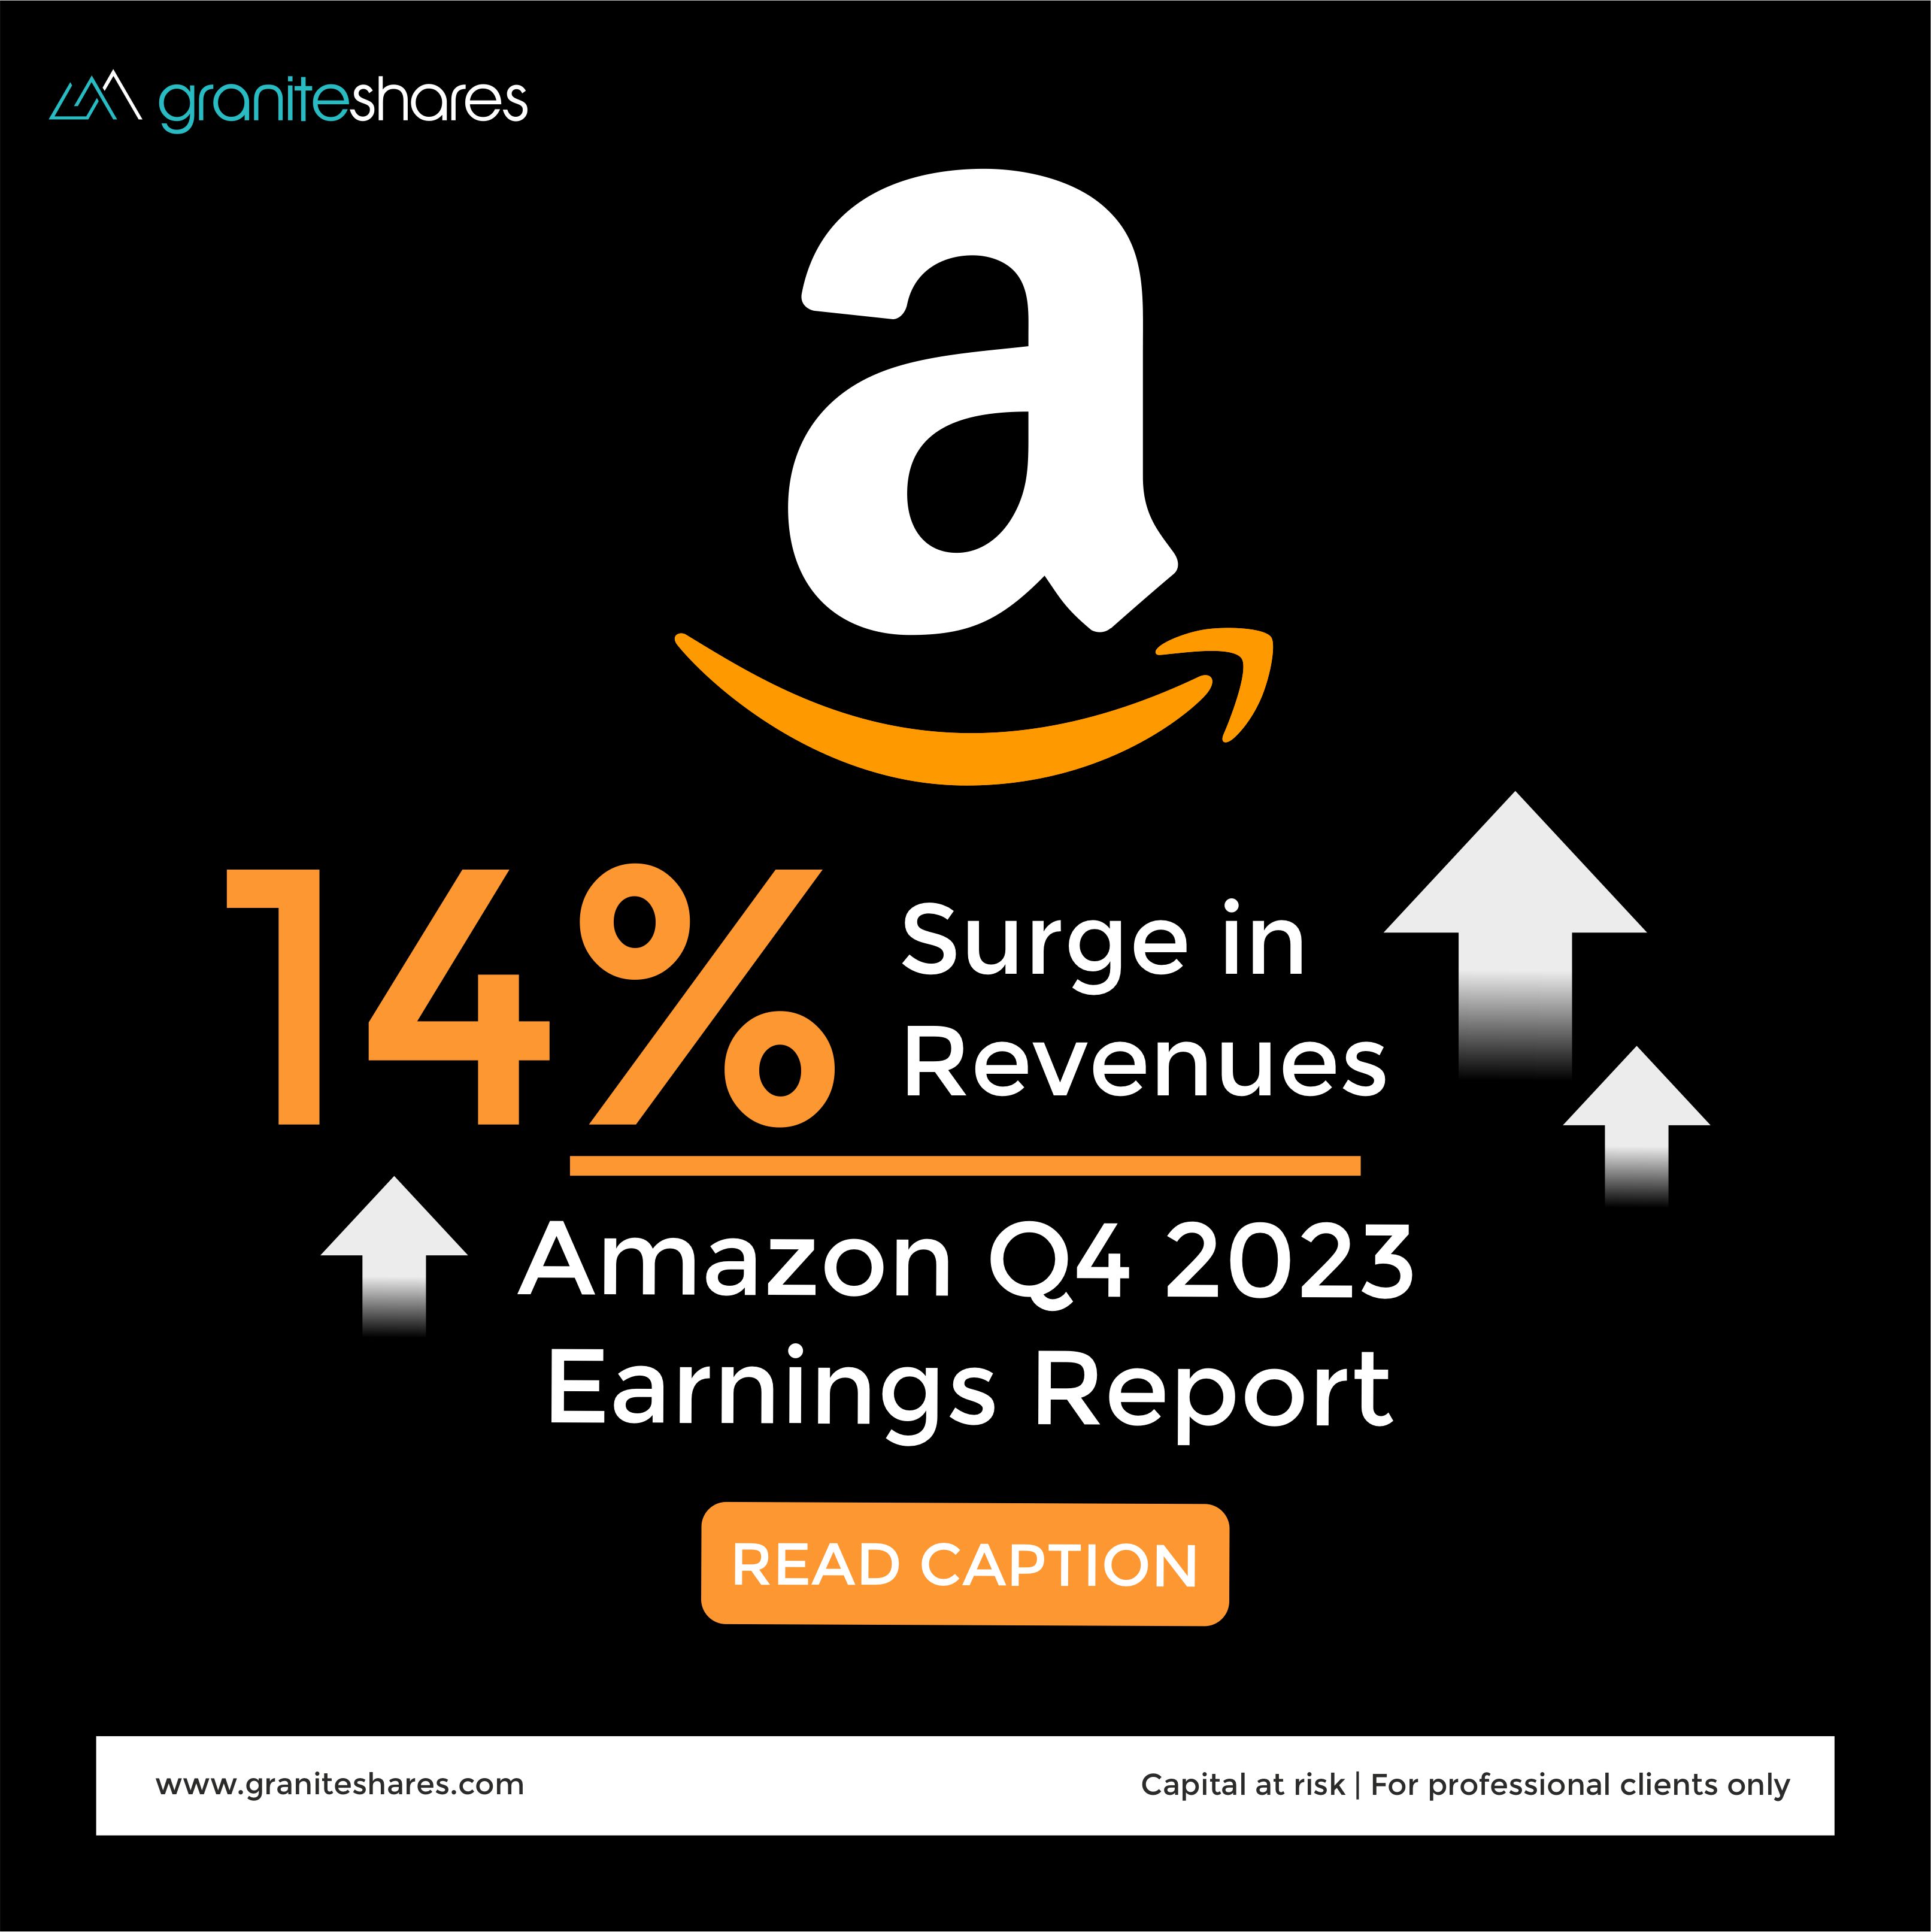 Amazon Q4 2023 Earnings